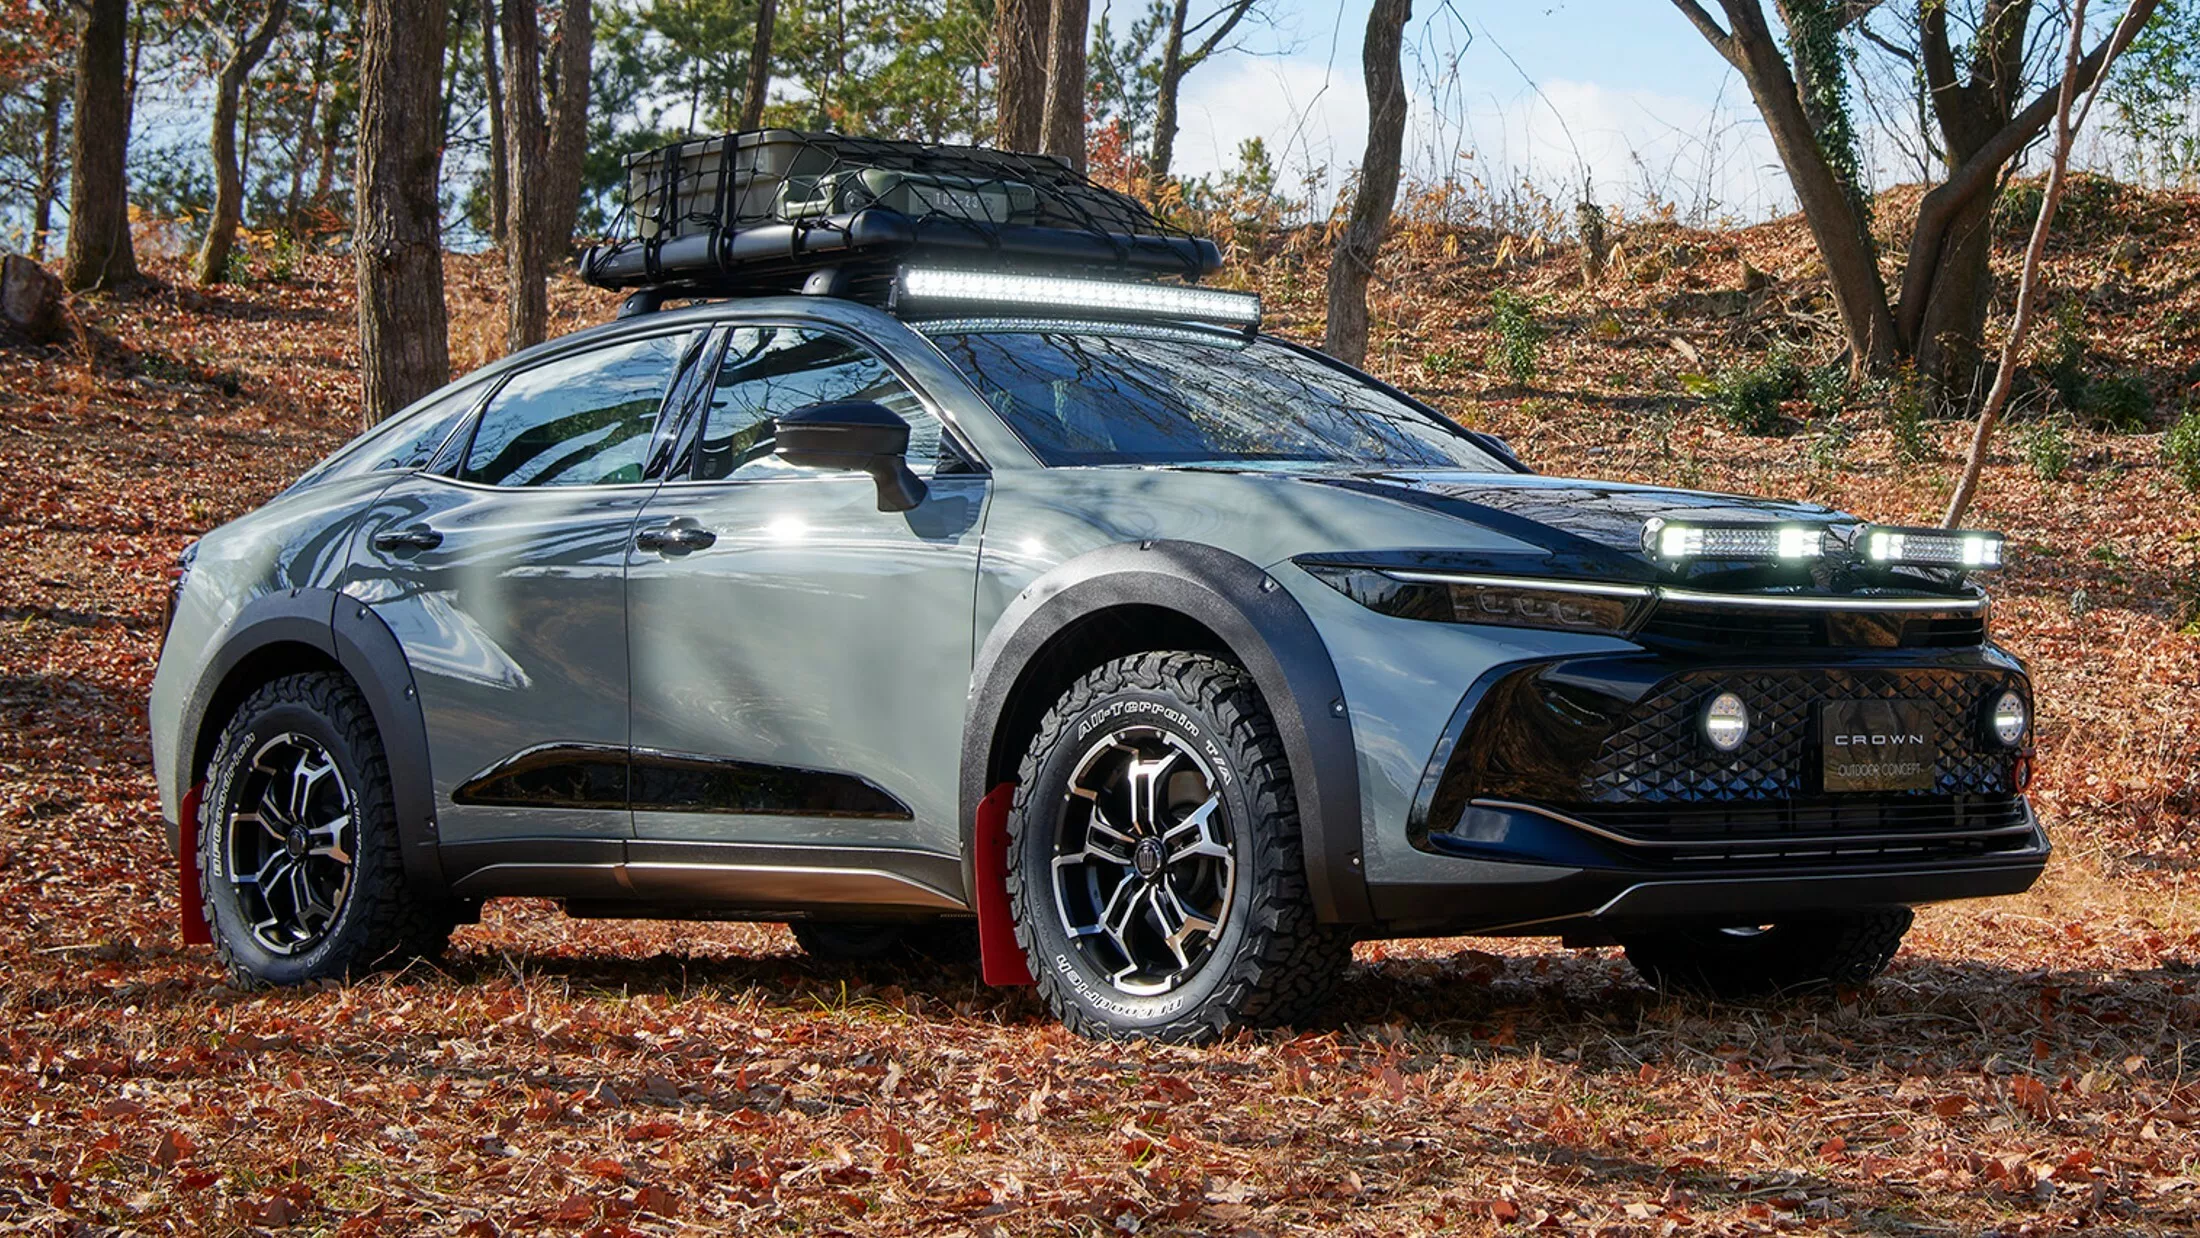 Toyota Crown Crossover bổ sung bản độ để đi off-road